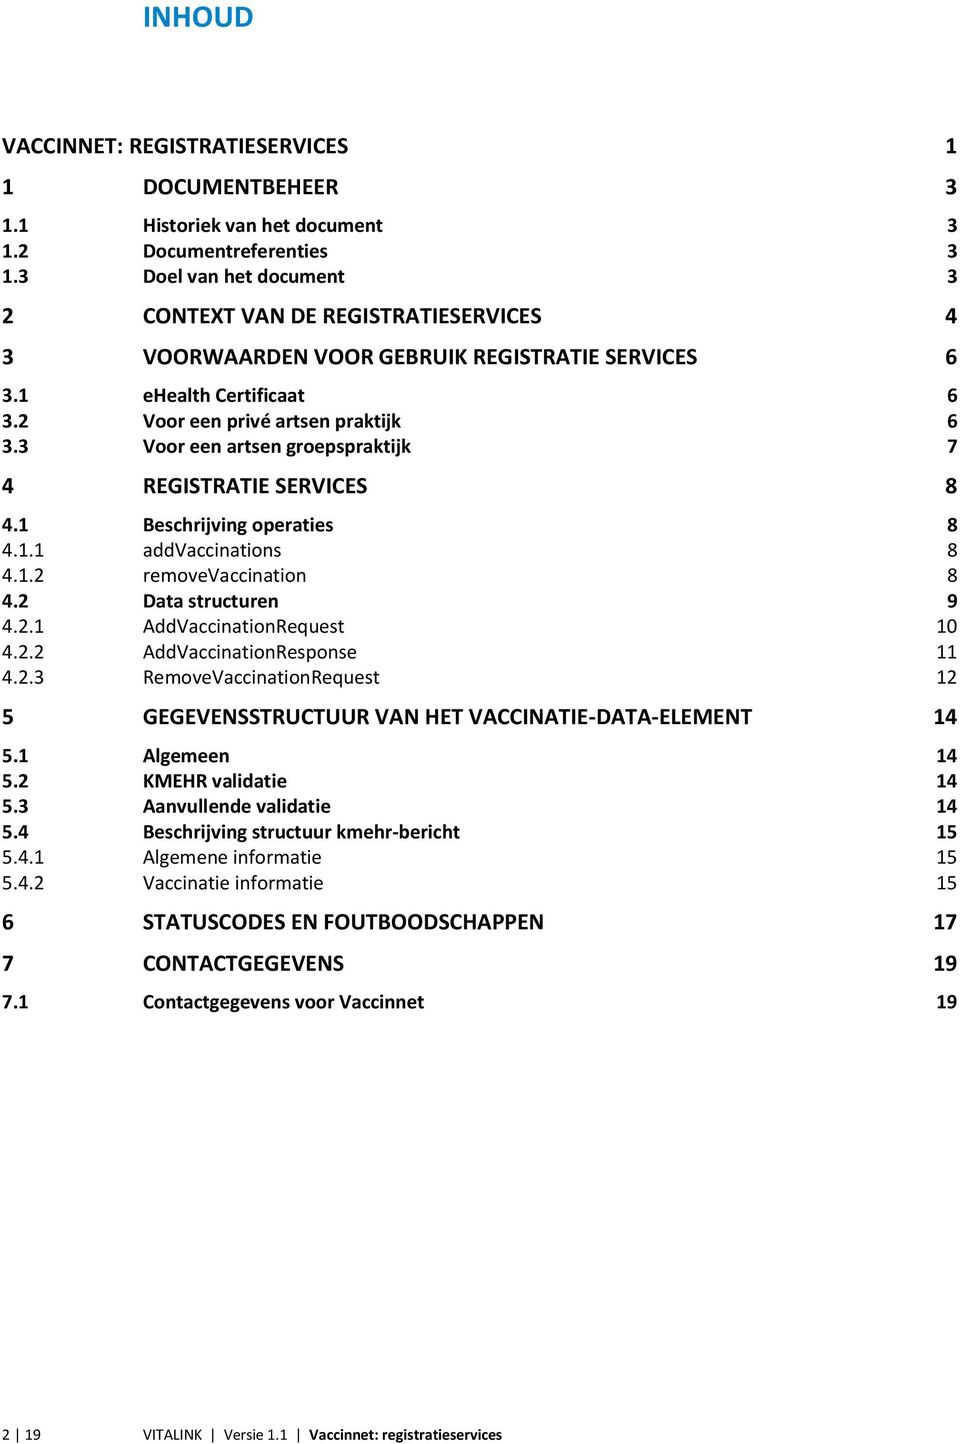 3 Voor een artsen groepspraktijk 7 4 REGISTRATIE SERVICES 8 4.1 Beschrijving operaties 8 4.1.1 addvaccinations 8 4.1.2 removevaccination 8 4.2 Data structuren 9 4.2.1 AddVaccinationRequest 10 4.2.2 AddVaccinationResponse 11 4.